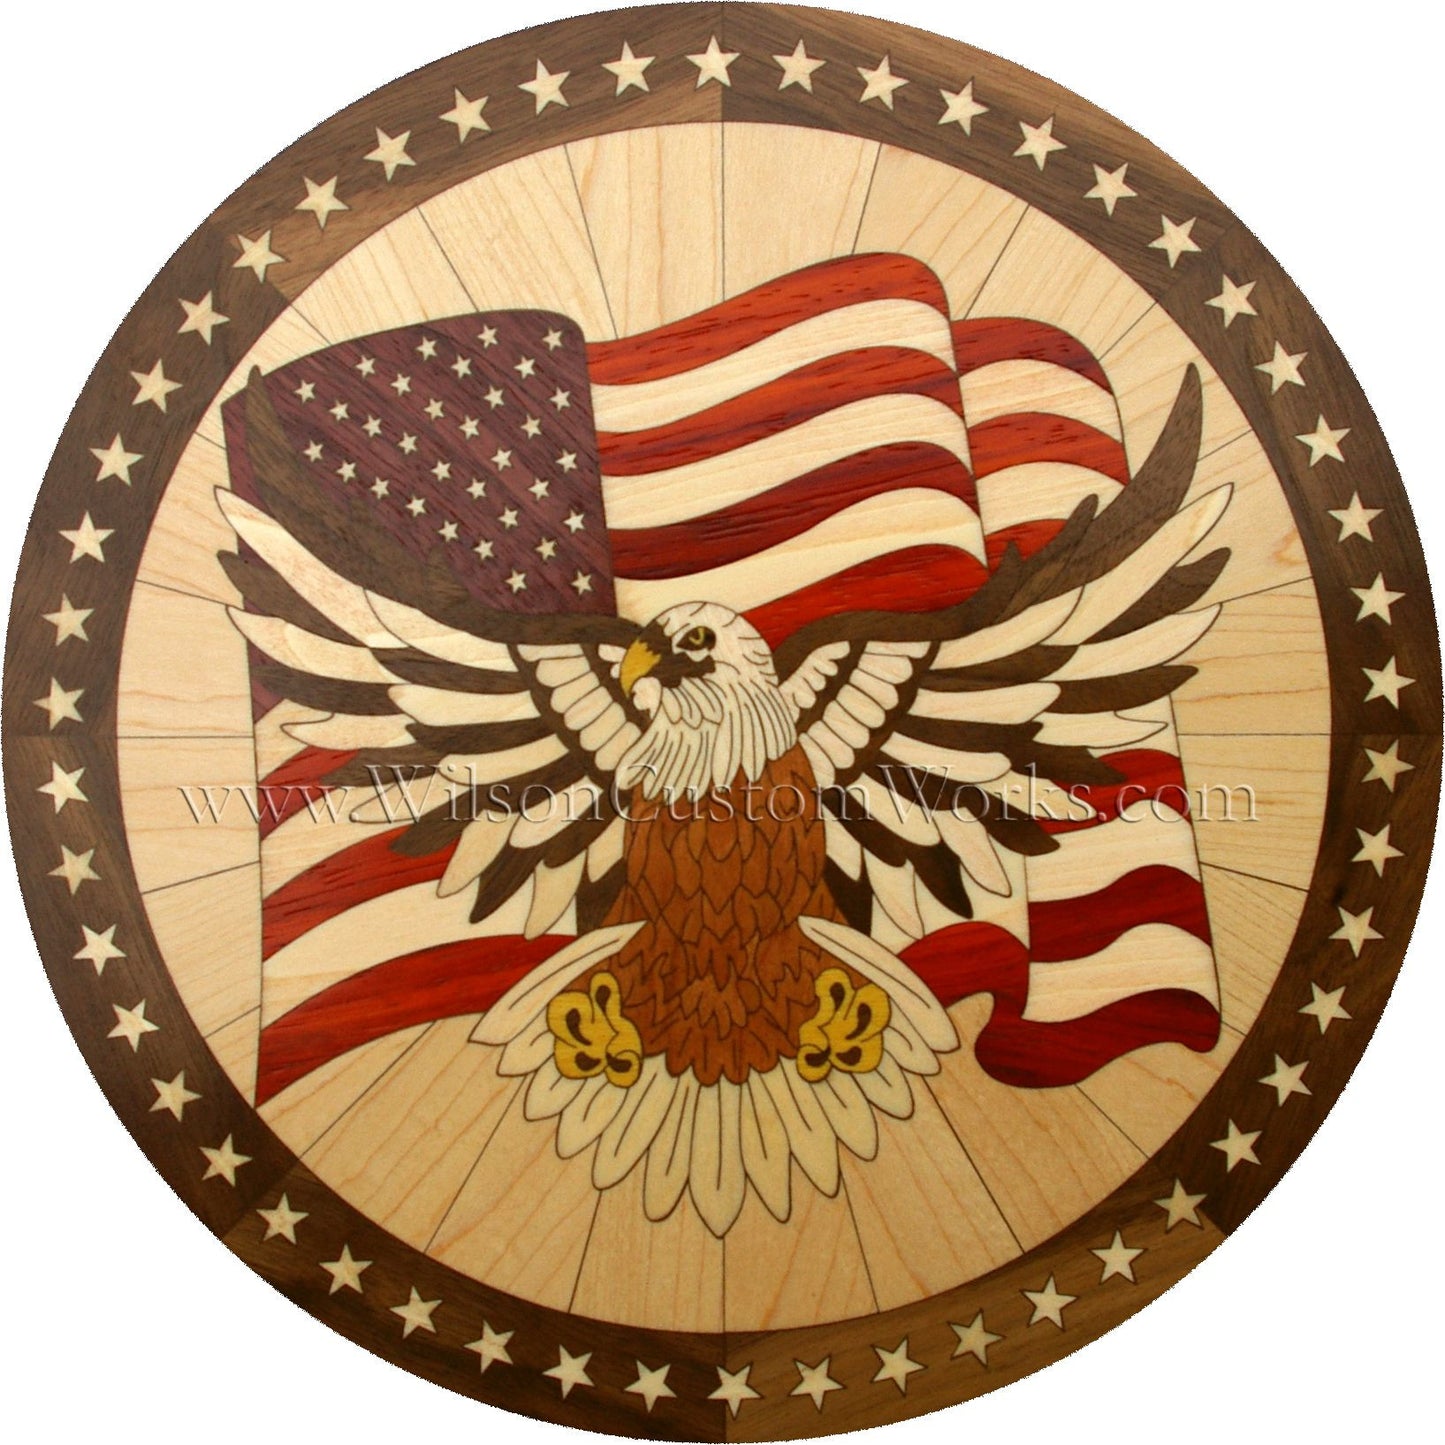 Wilson Custom Works hardwood wood floor inlay medallion patriot eagle patriotic design